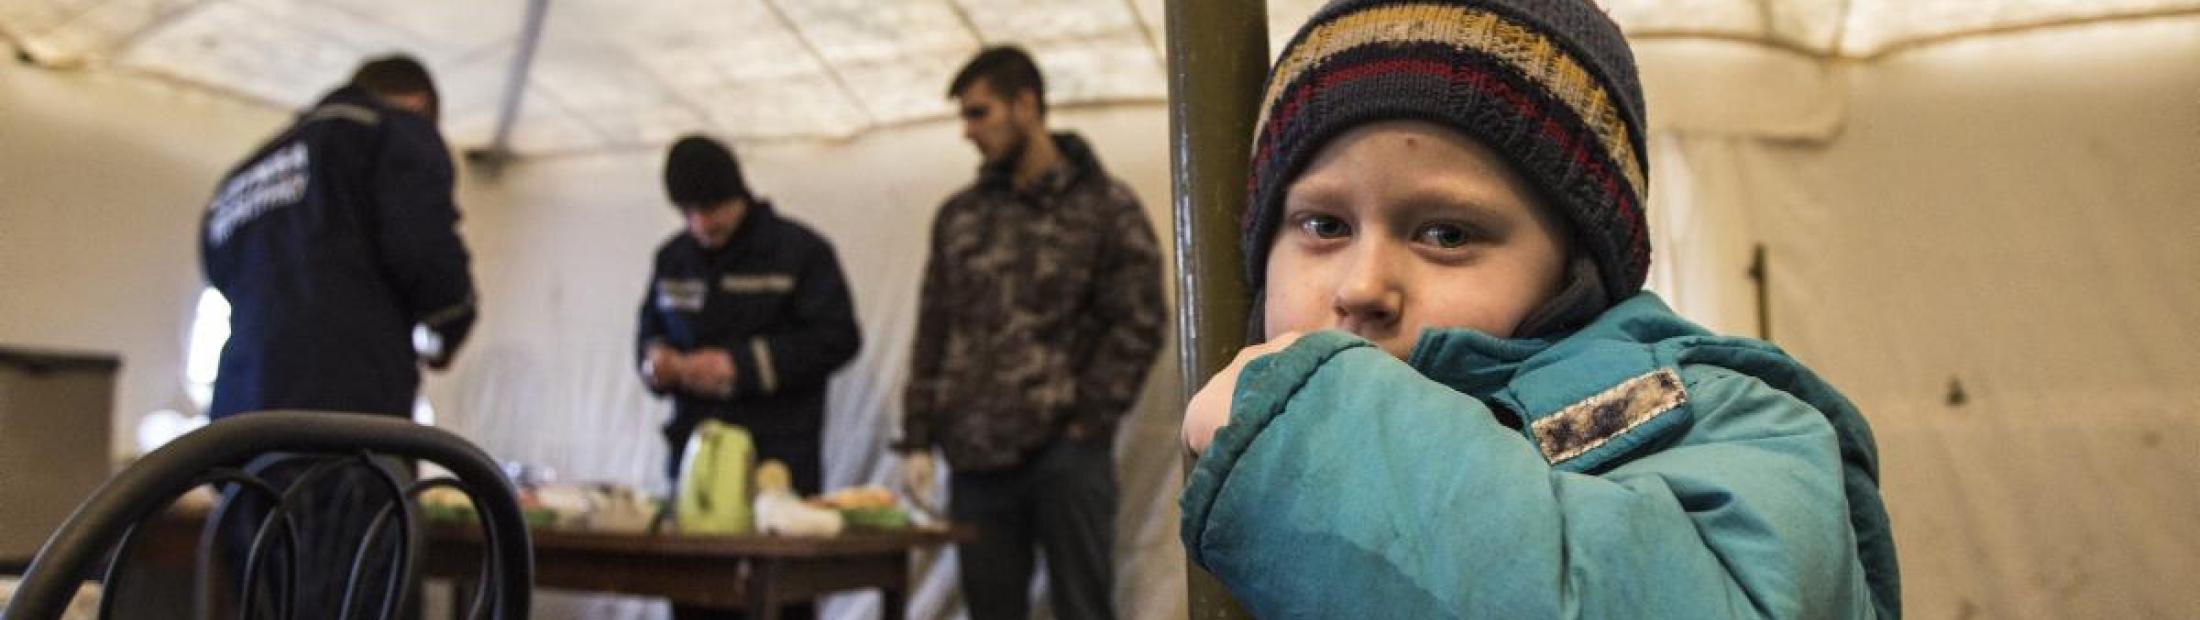 Aumenta el desplazamiento y el deterioro de la situación humanitaria en Ucrania